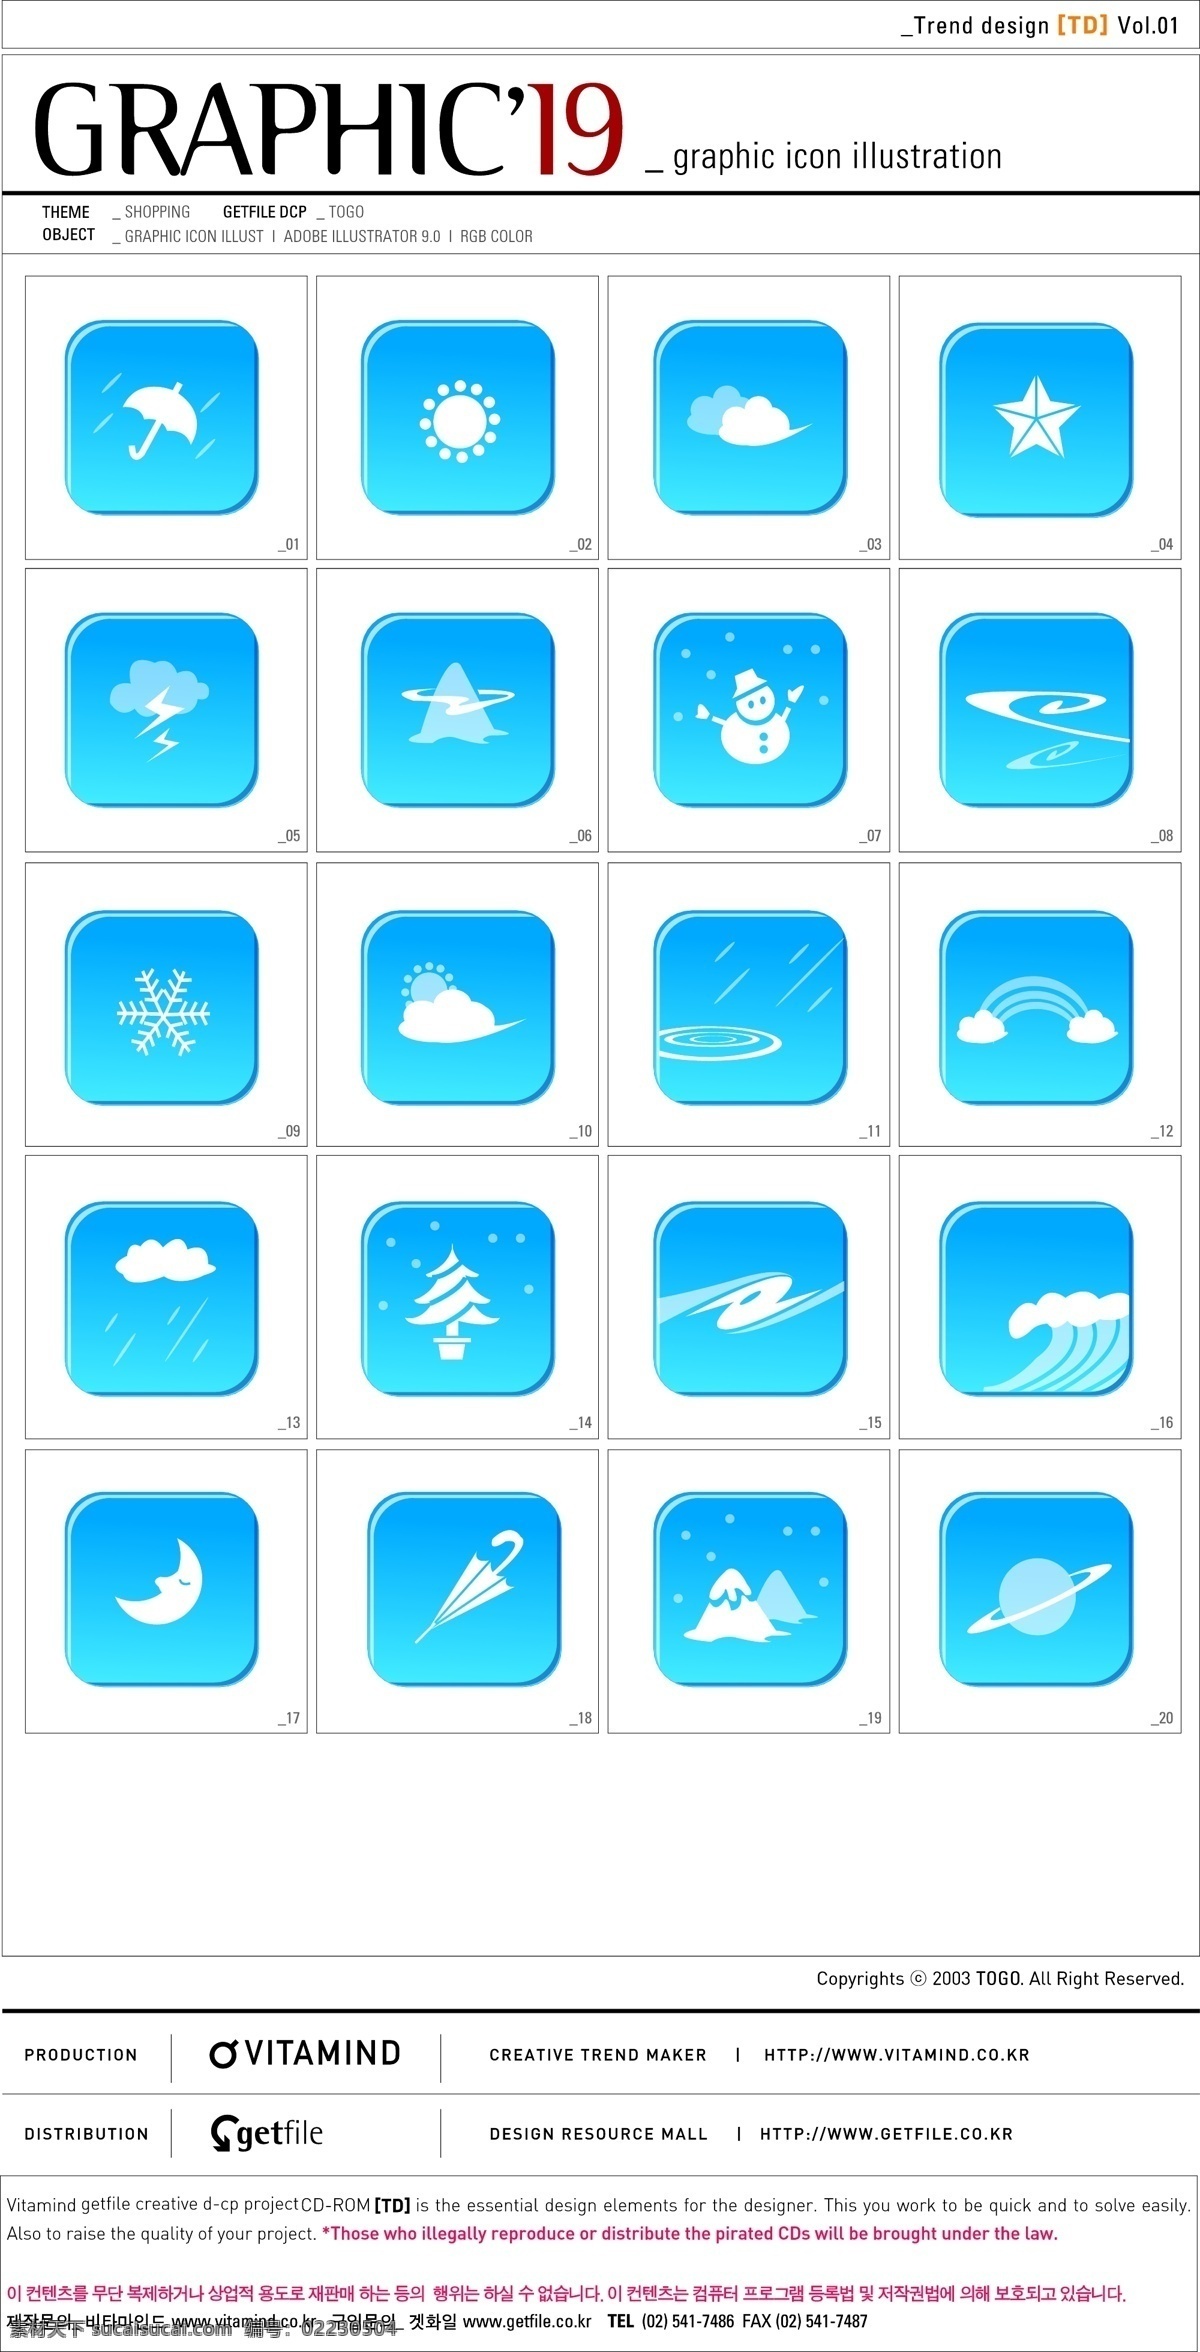 韩国 蓝色 天气预报 矢量 图标 套 系 儿童矢量图 风景cdr 矢量卡通图 矢量情侣图 矢量图免费